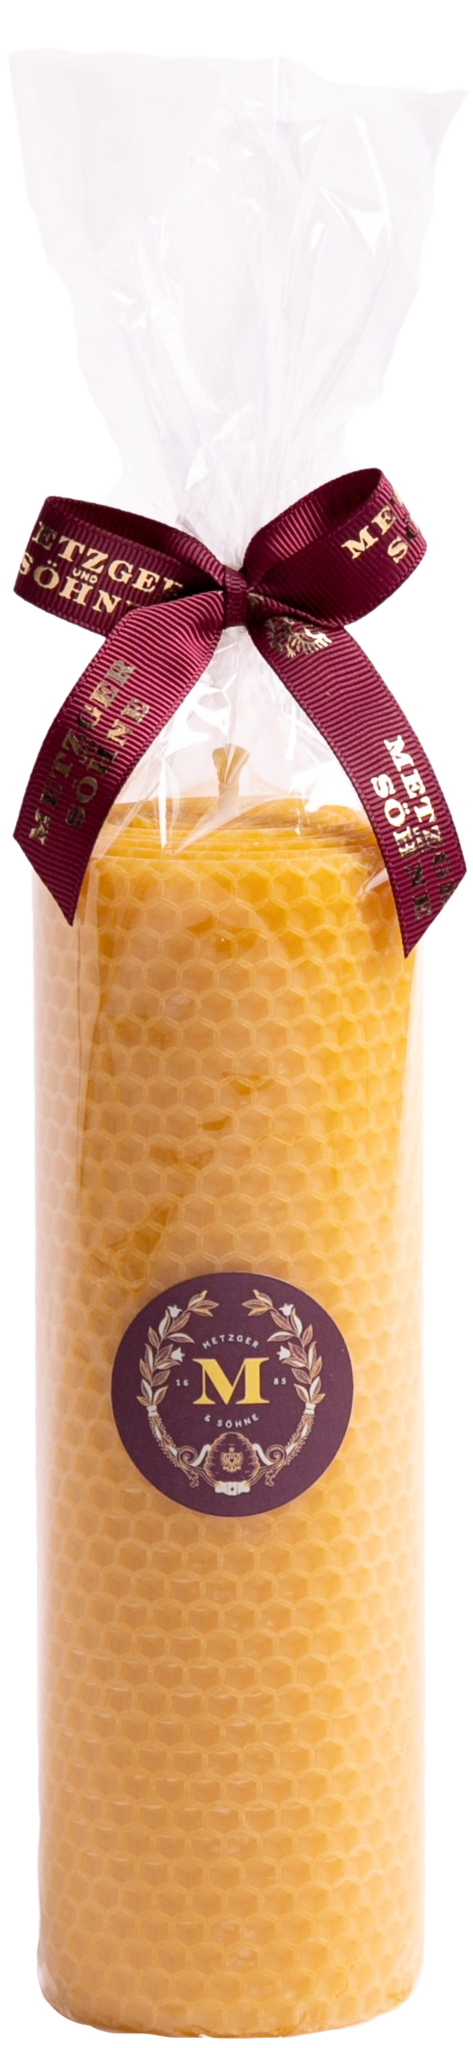 100% Bienenwachskerze 63x200mm. Bienenwachs ist ein reines Naturprodukt, von Honigbienen erzeugt. Bienenwachs duftet und verbrennt unschädlich. 